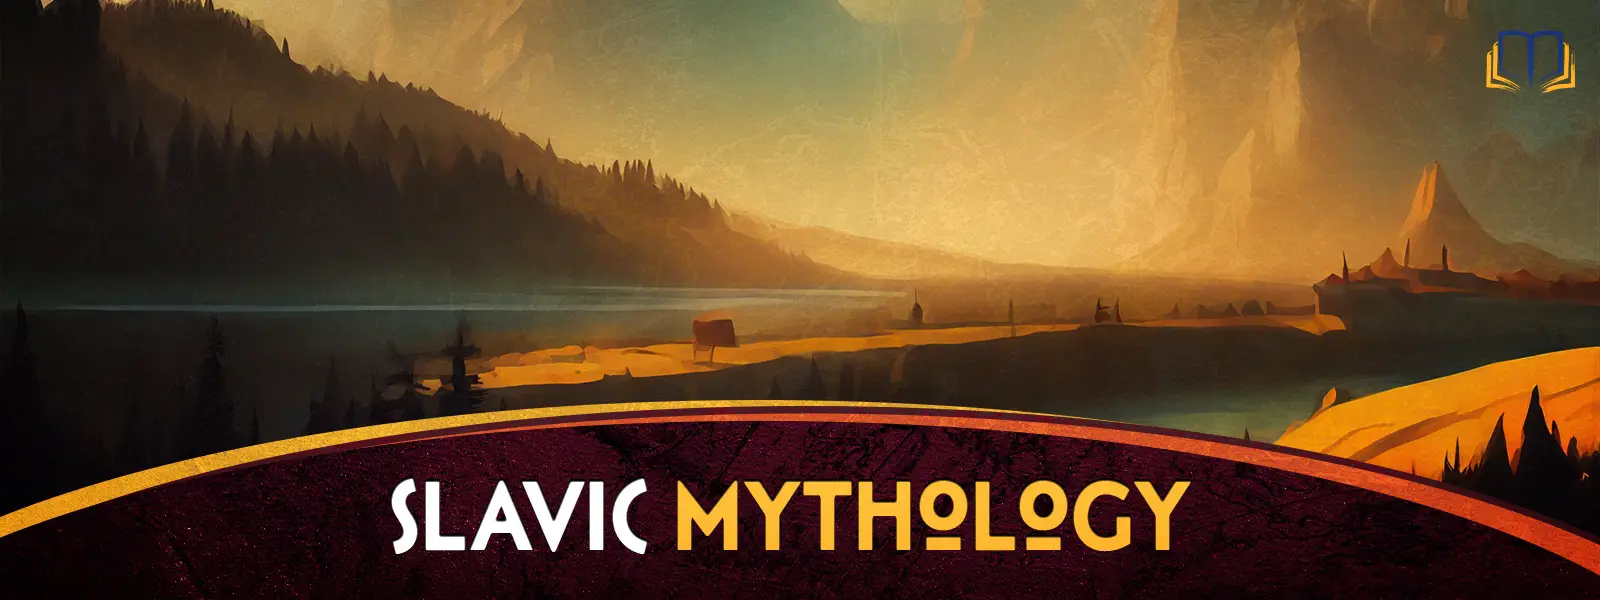 Slavic Mythology Hub Landscape